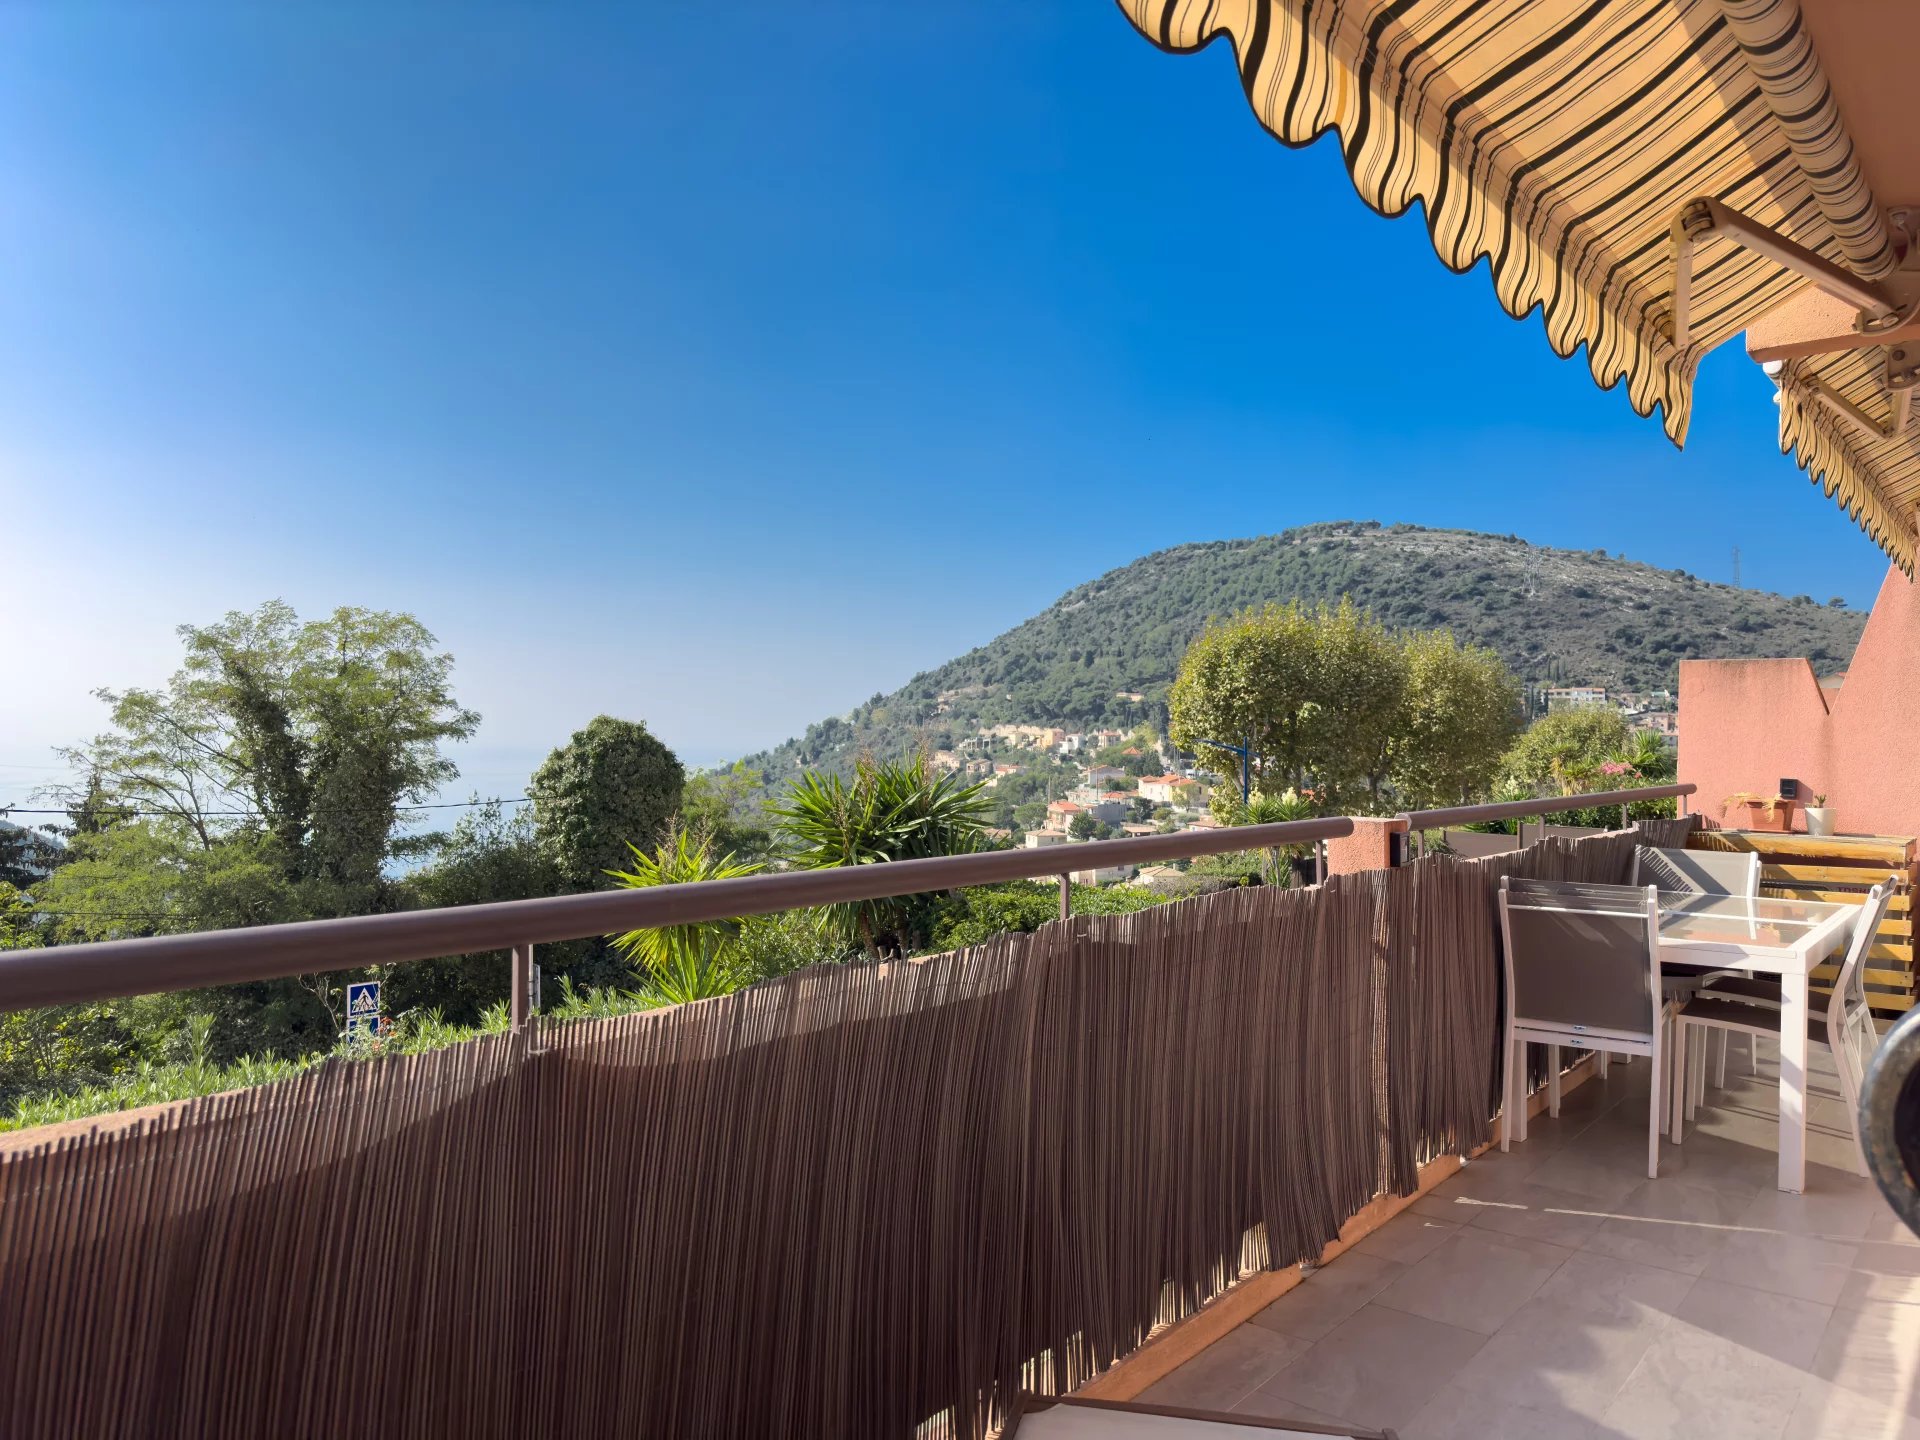 Appartement 2 pièces lumineux avec vue panoramique à La Turbie : idéal pour vivre ou investir près de Monaco.